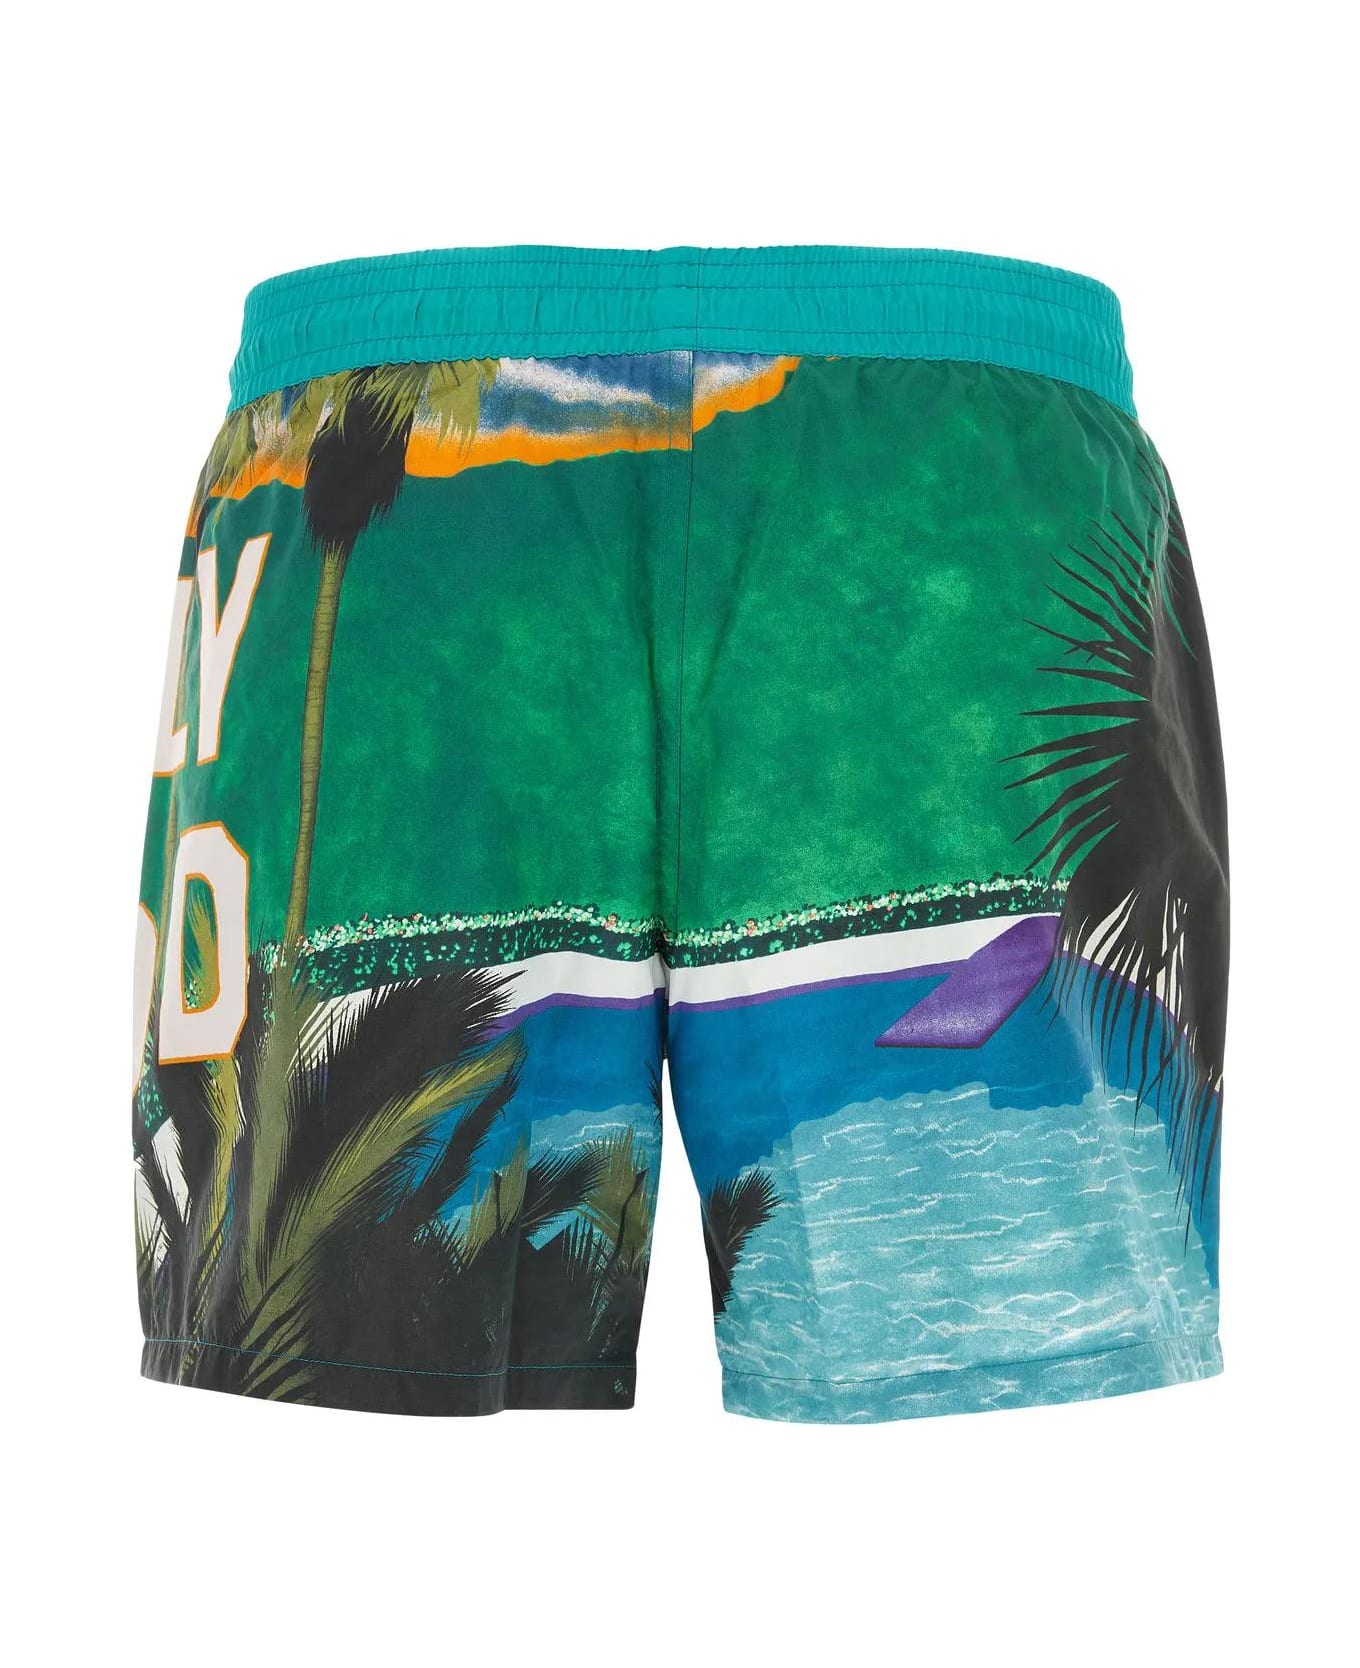 Etro Printed Nylon Swimming Shorts - Multicolor 水着